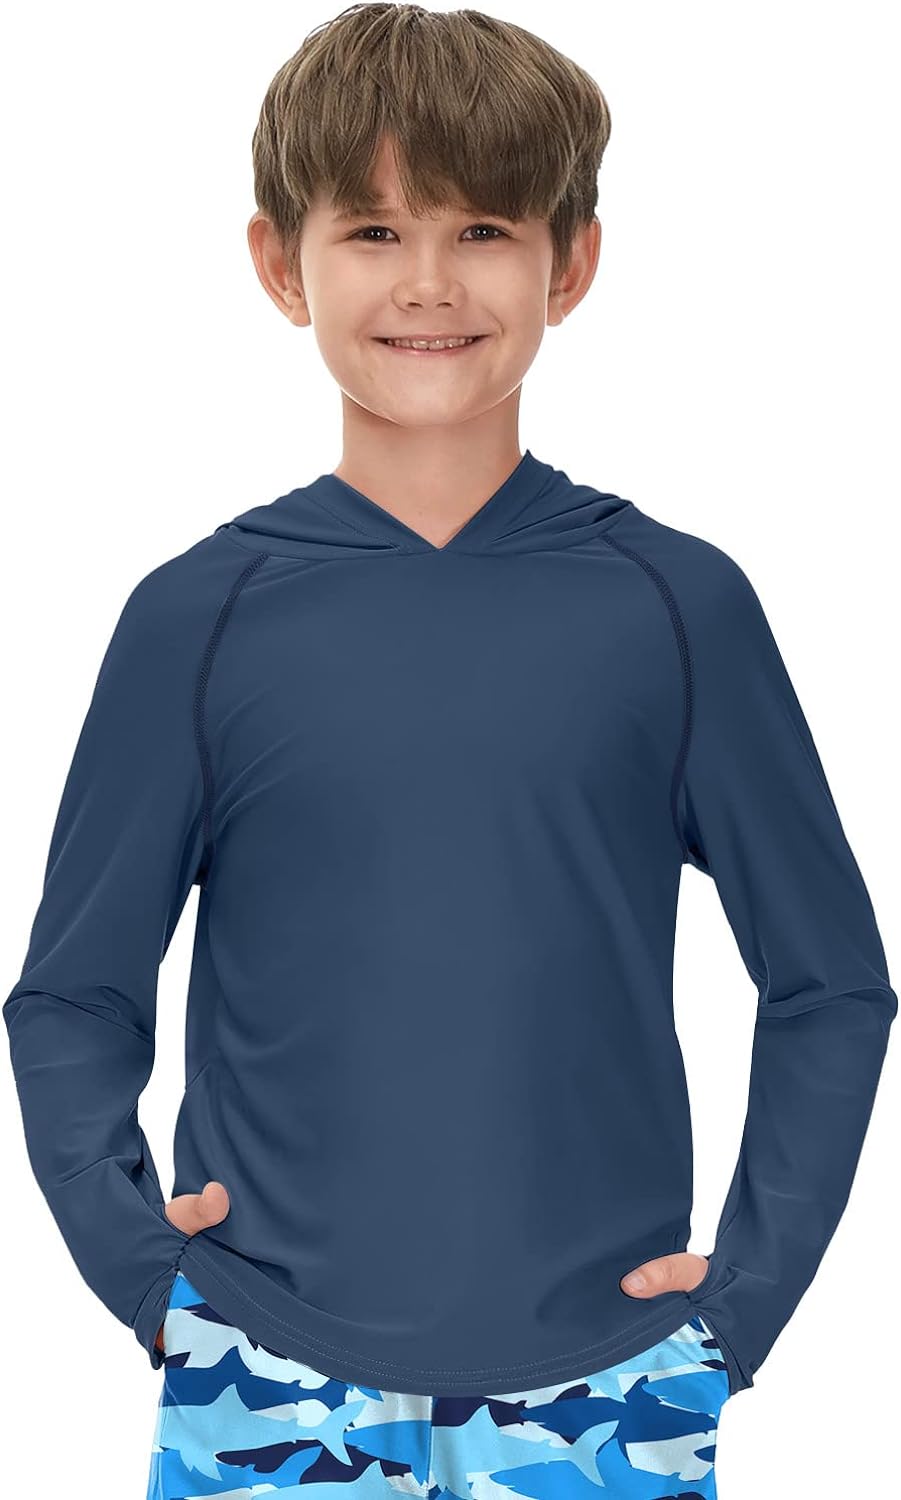 BesserBay Unisex Kids UPF 50+ Sun Protection Hooded Rashguard Swim Shirt  1-14 Ye